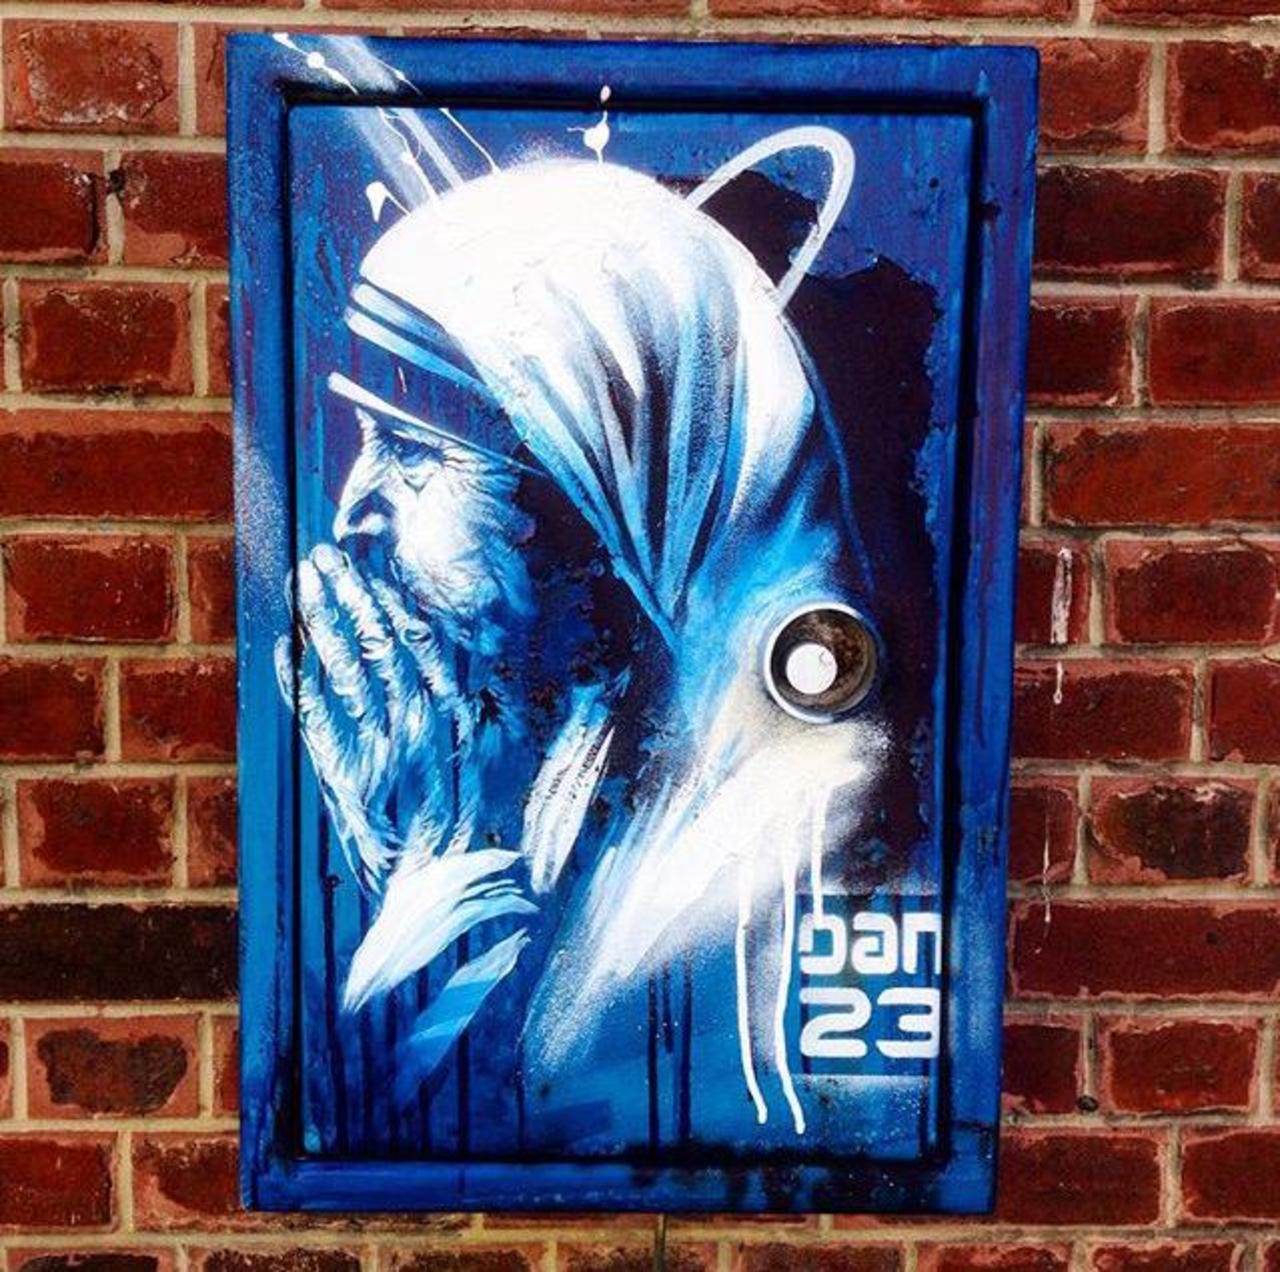 New Street Art 'Détail Spirit' by Dan23 

#art #graffiti #mural #streetart http://t.co/Dhzf9BesRp